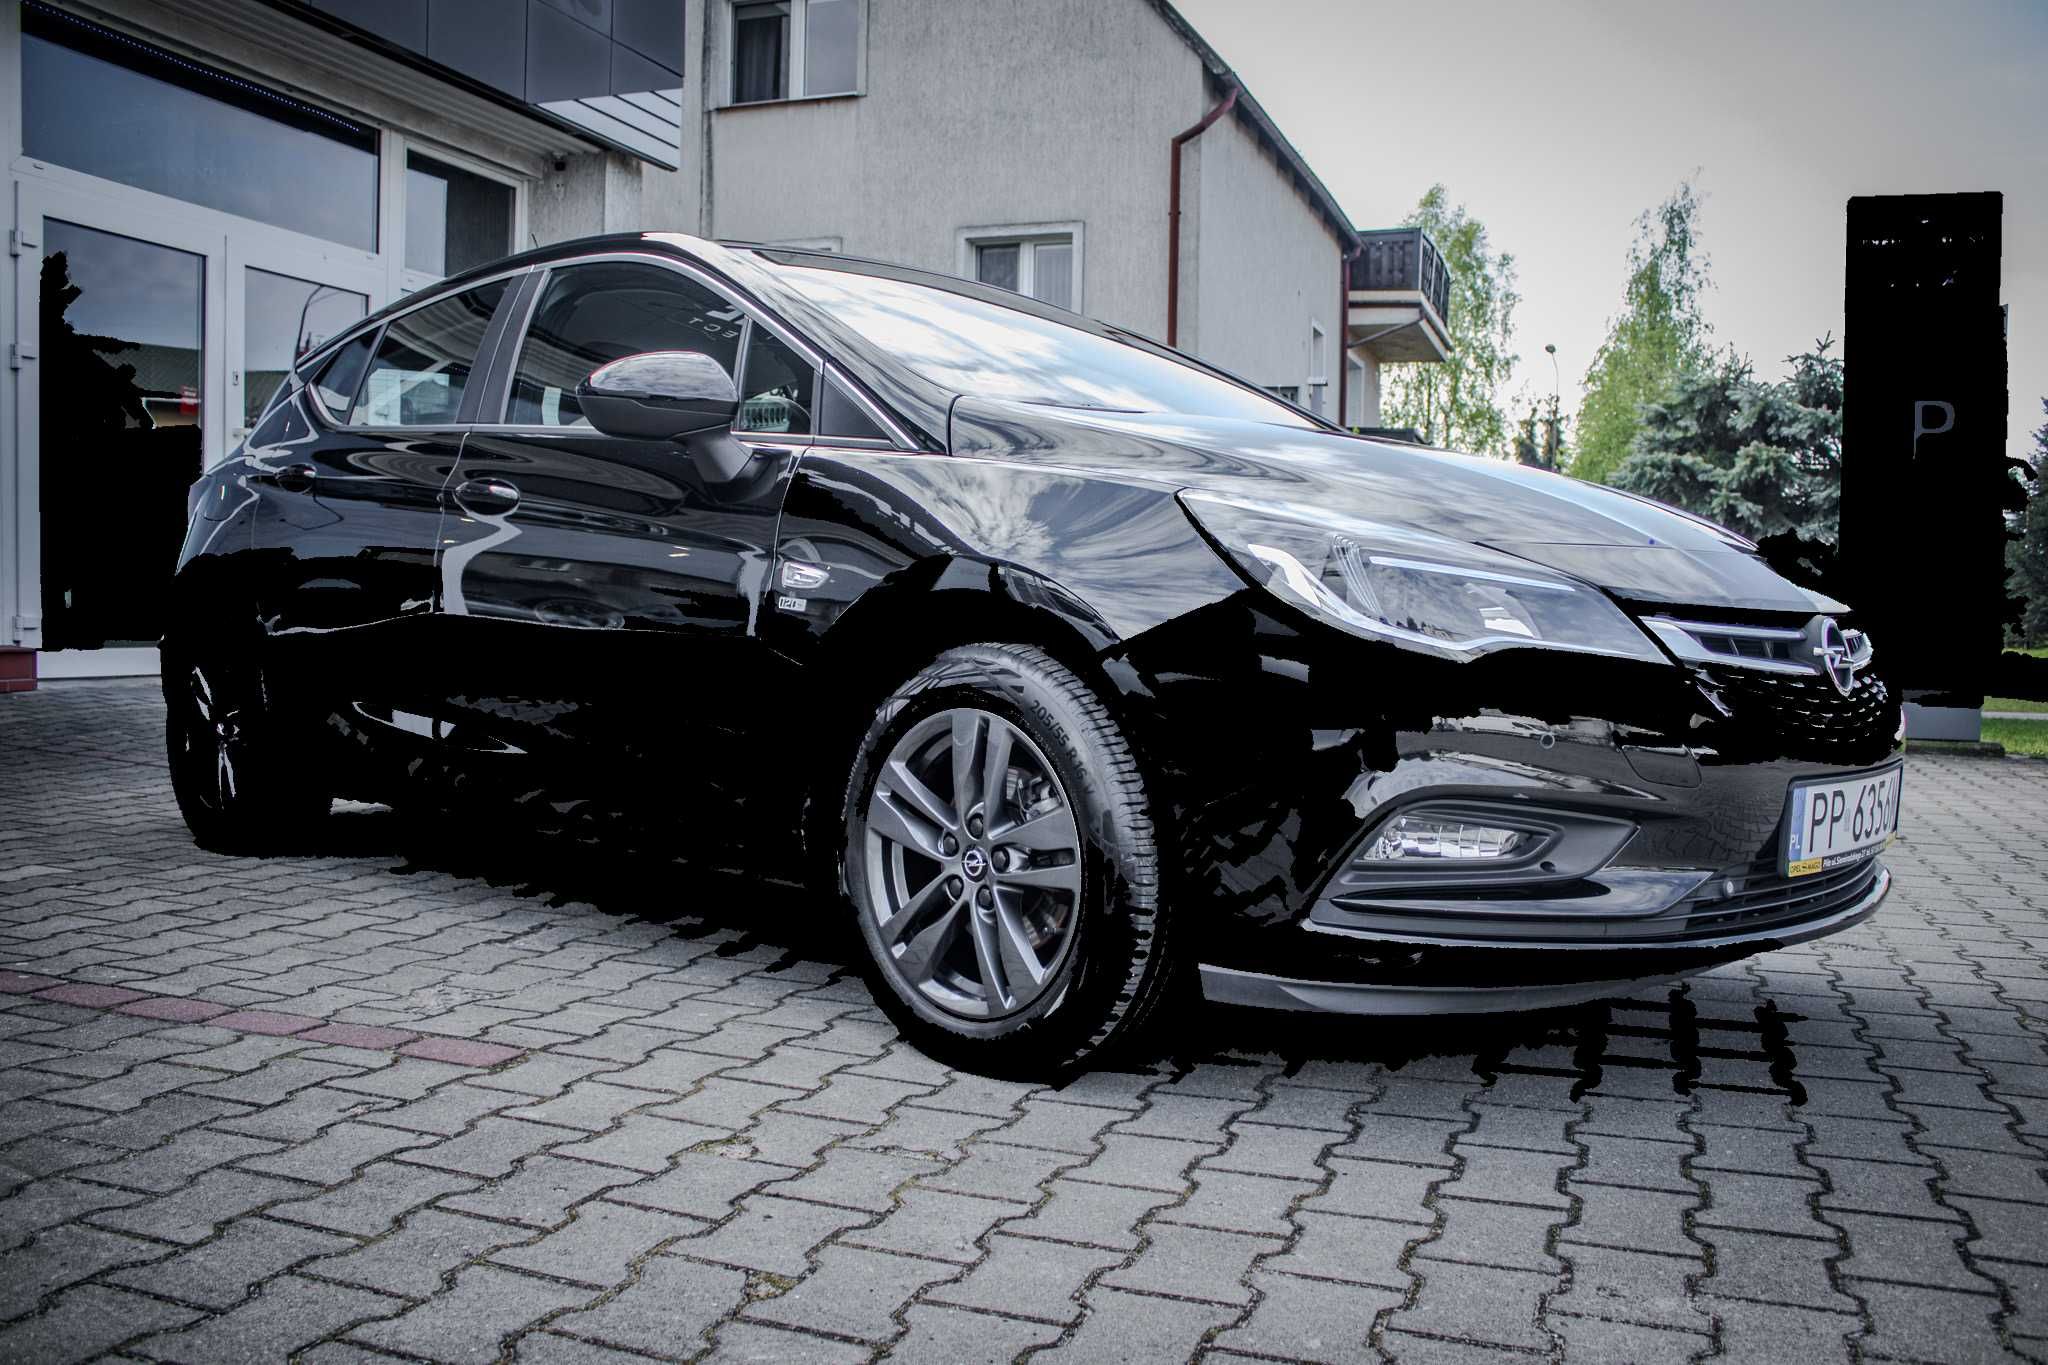 Opel Astra 1,4 edycja jubileuszowa "120 lat"